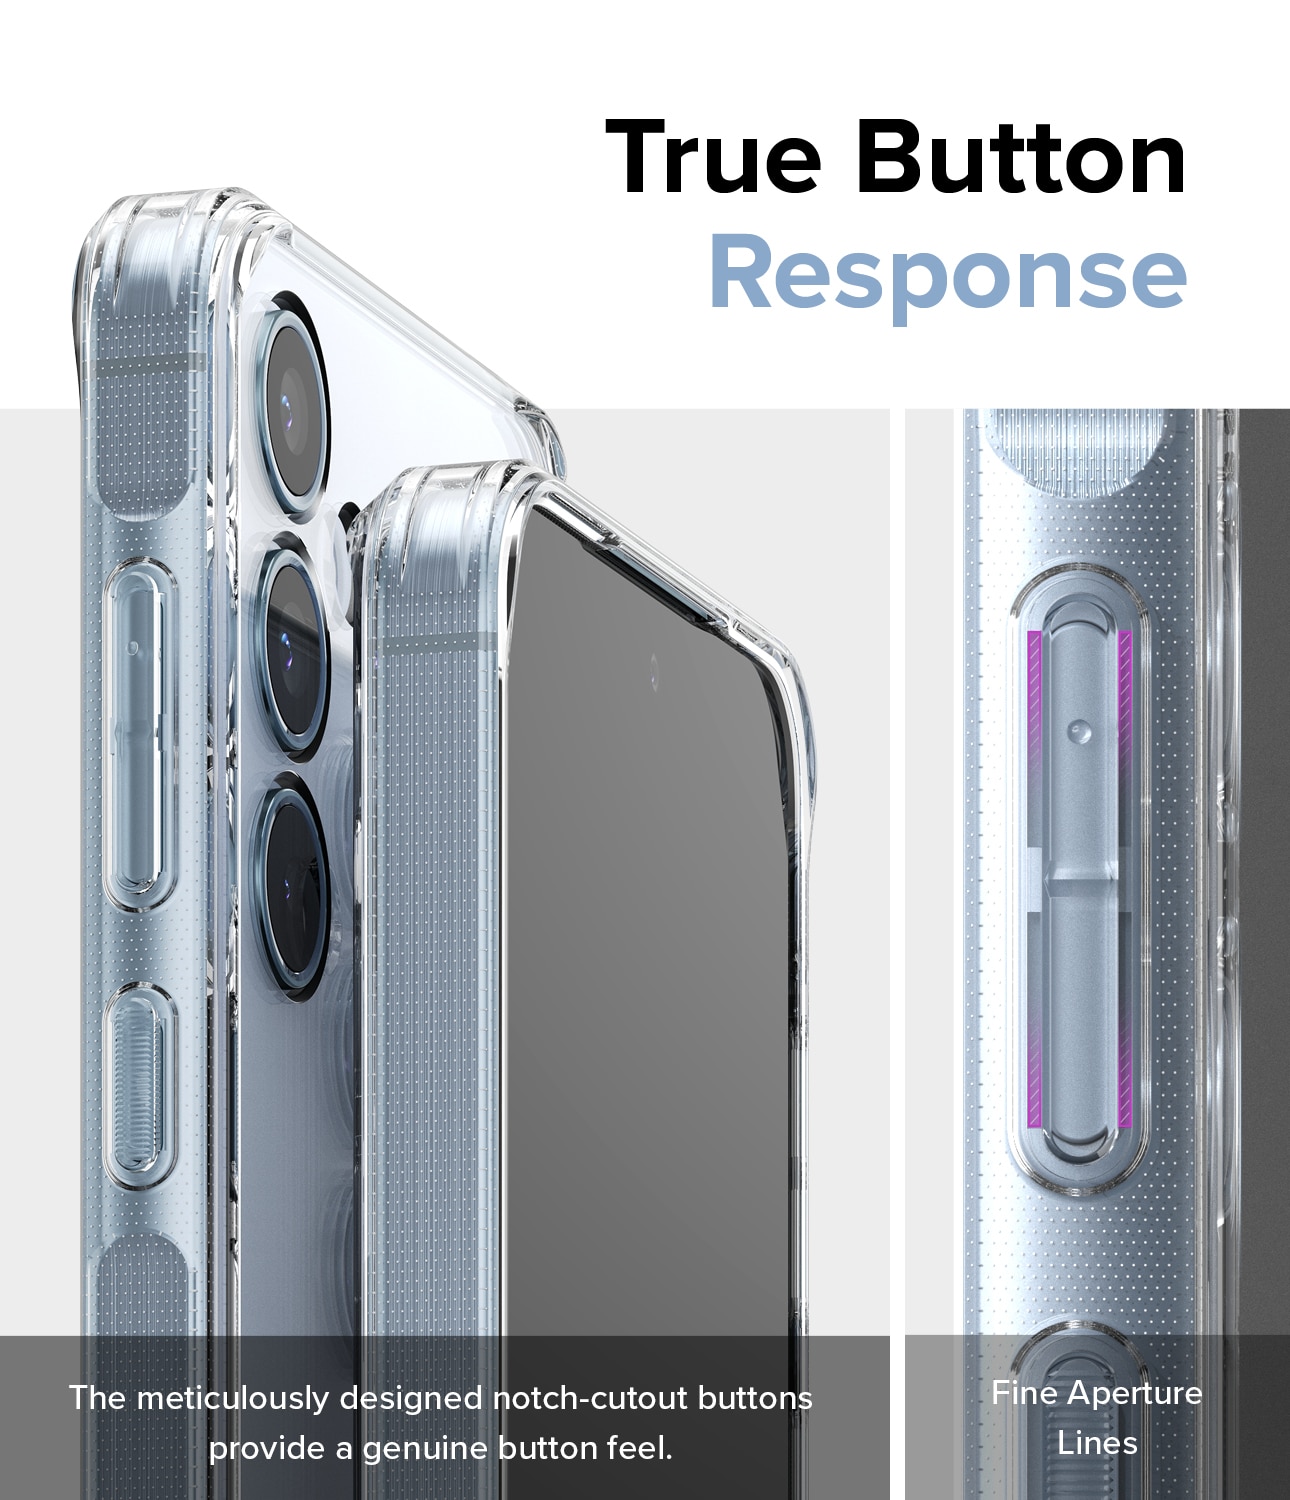 Samsung Galaxy A55 Fusion skal, genomskinlig